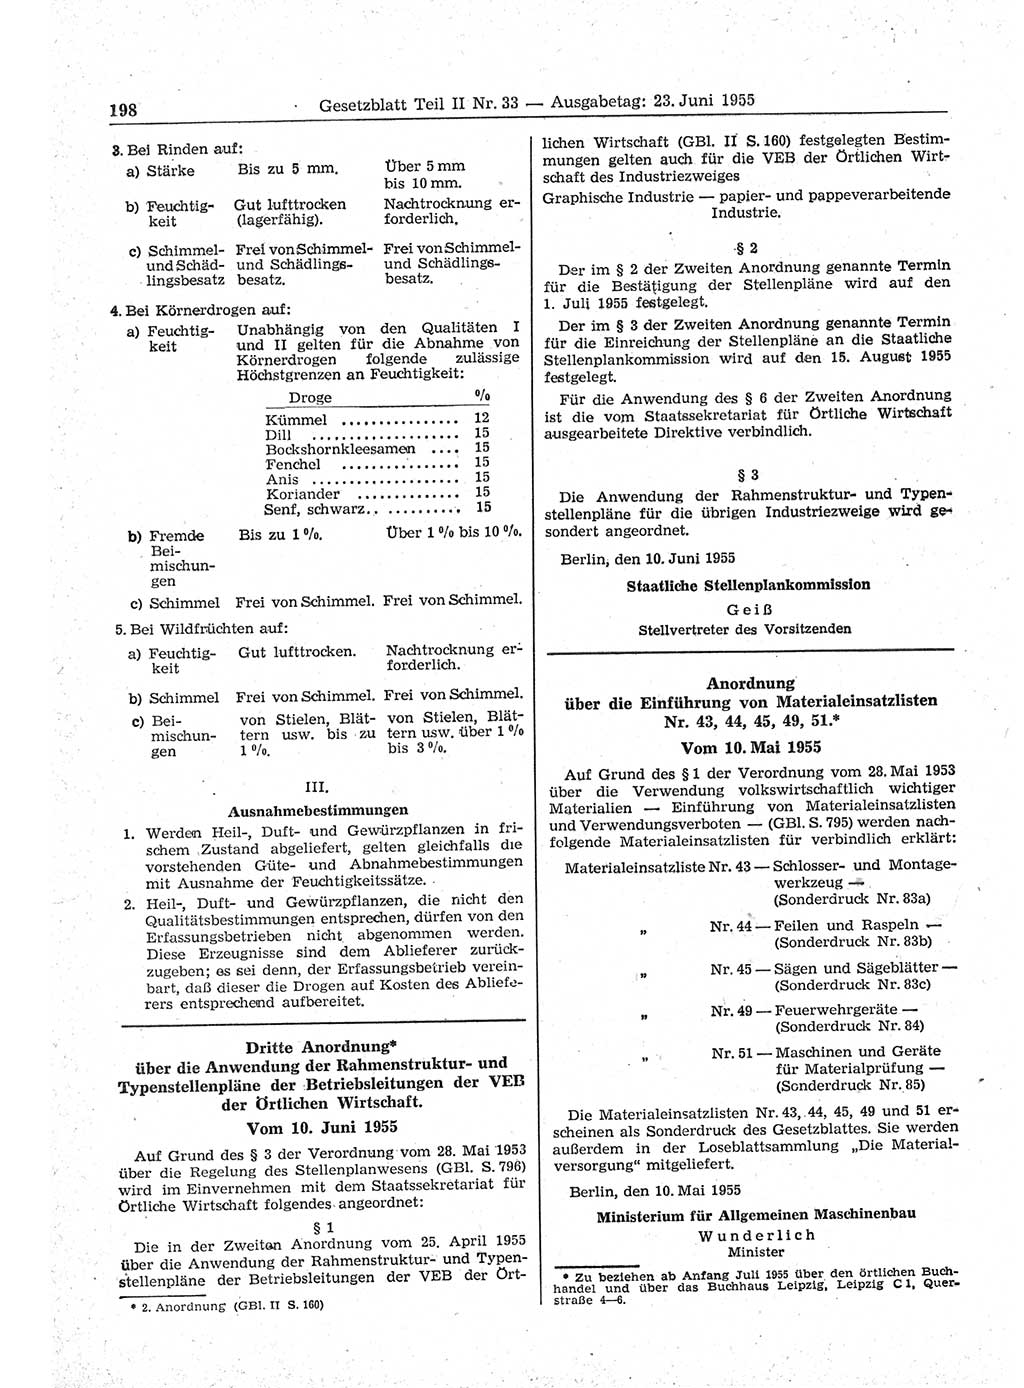 Gesetzblatt (GBl.) der Deutschen Demokratischen Republik (DDR) Teil ⅠⅠ 1955, Seite 198 (GBl. DDR ⅠⅠ 1955, S. 198)